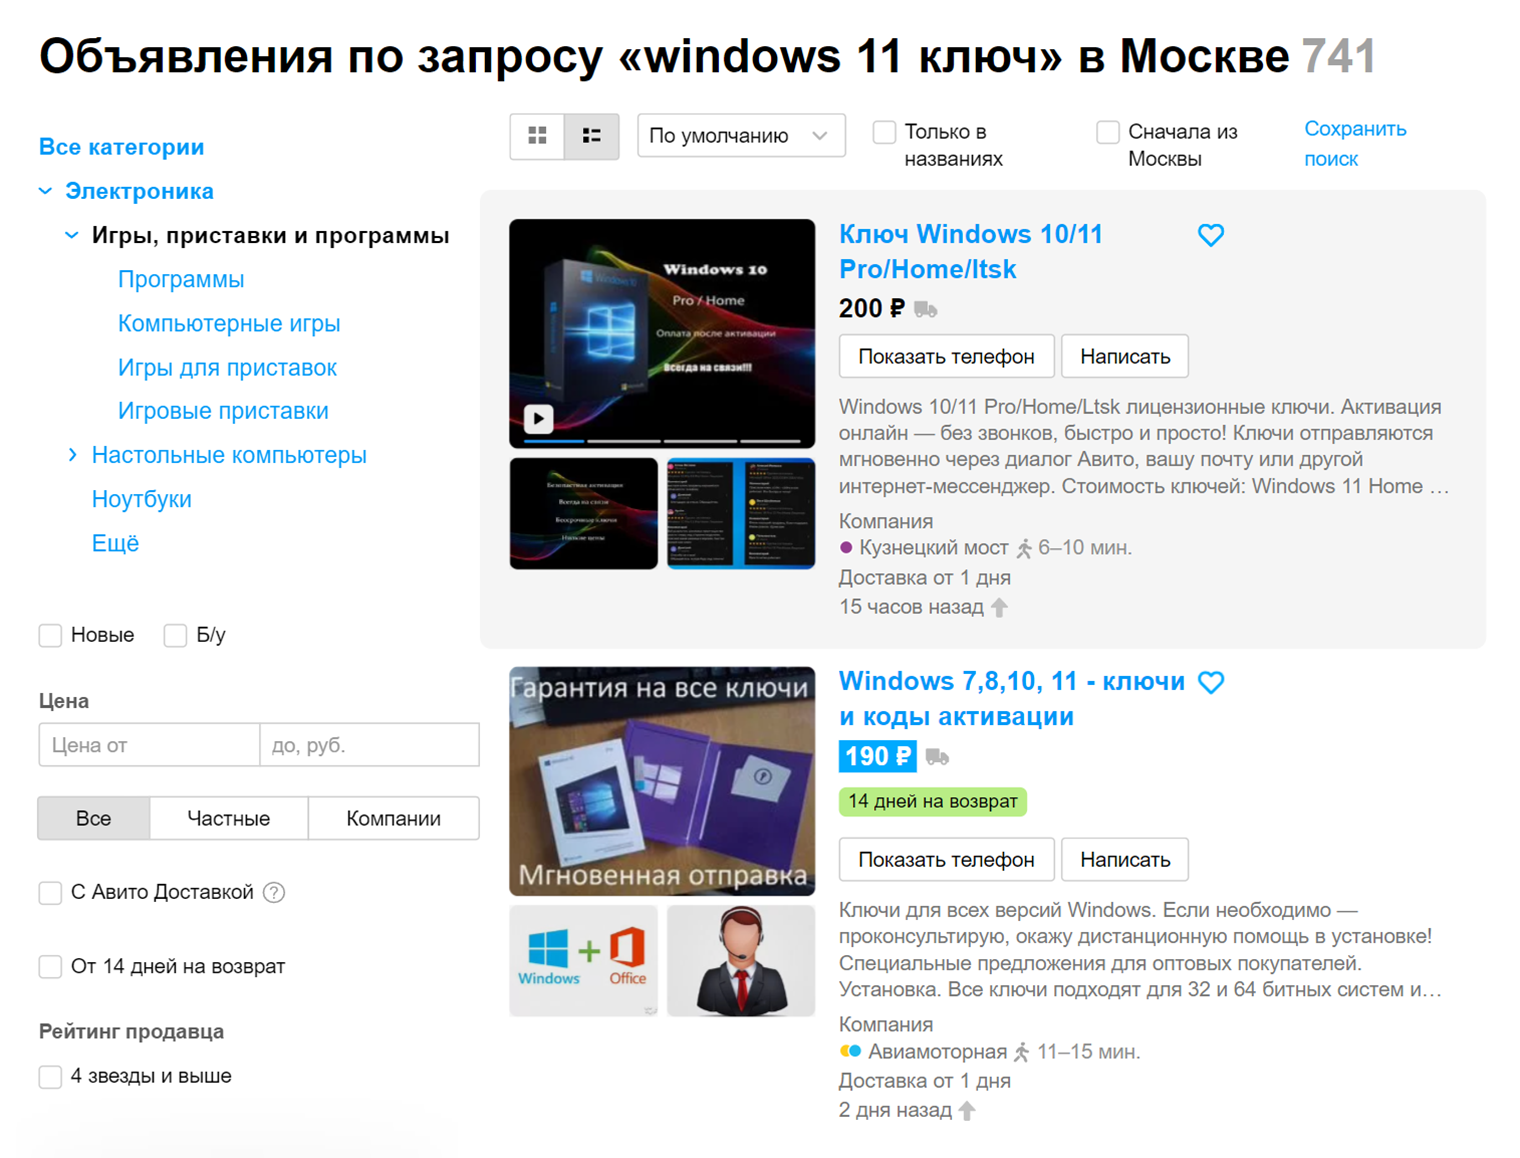 В Москве больше 700 объявлений о продаже ключей Windows 11, но регион не имеет значения — вам все равно пришлют ключ текстом. Источник: avito.ru